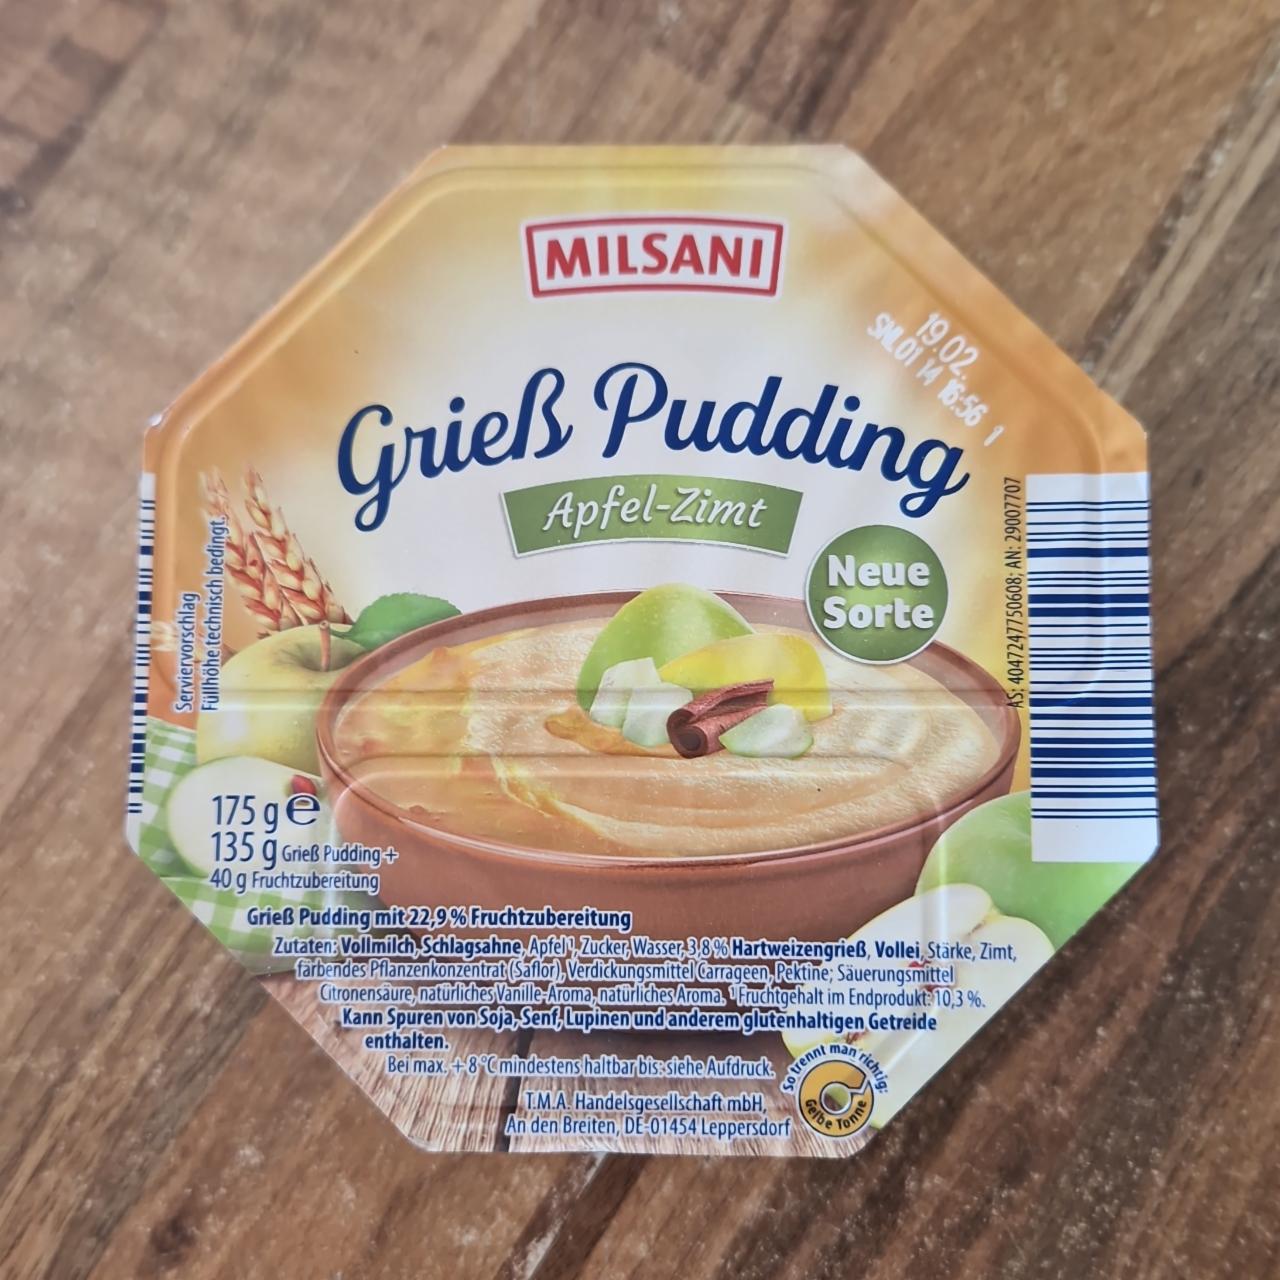 Képek - Gries pudding apfel-zimt Milsani